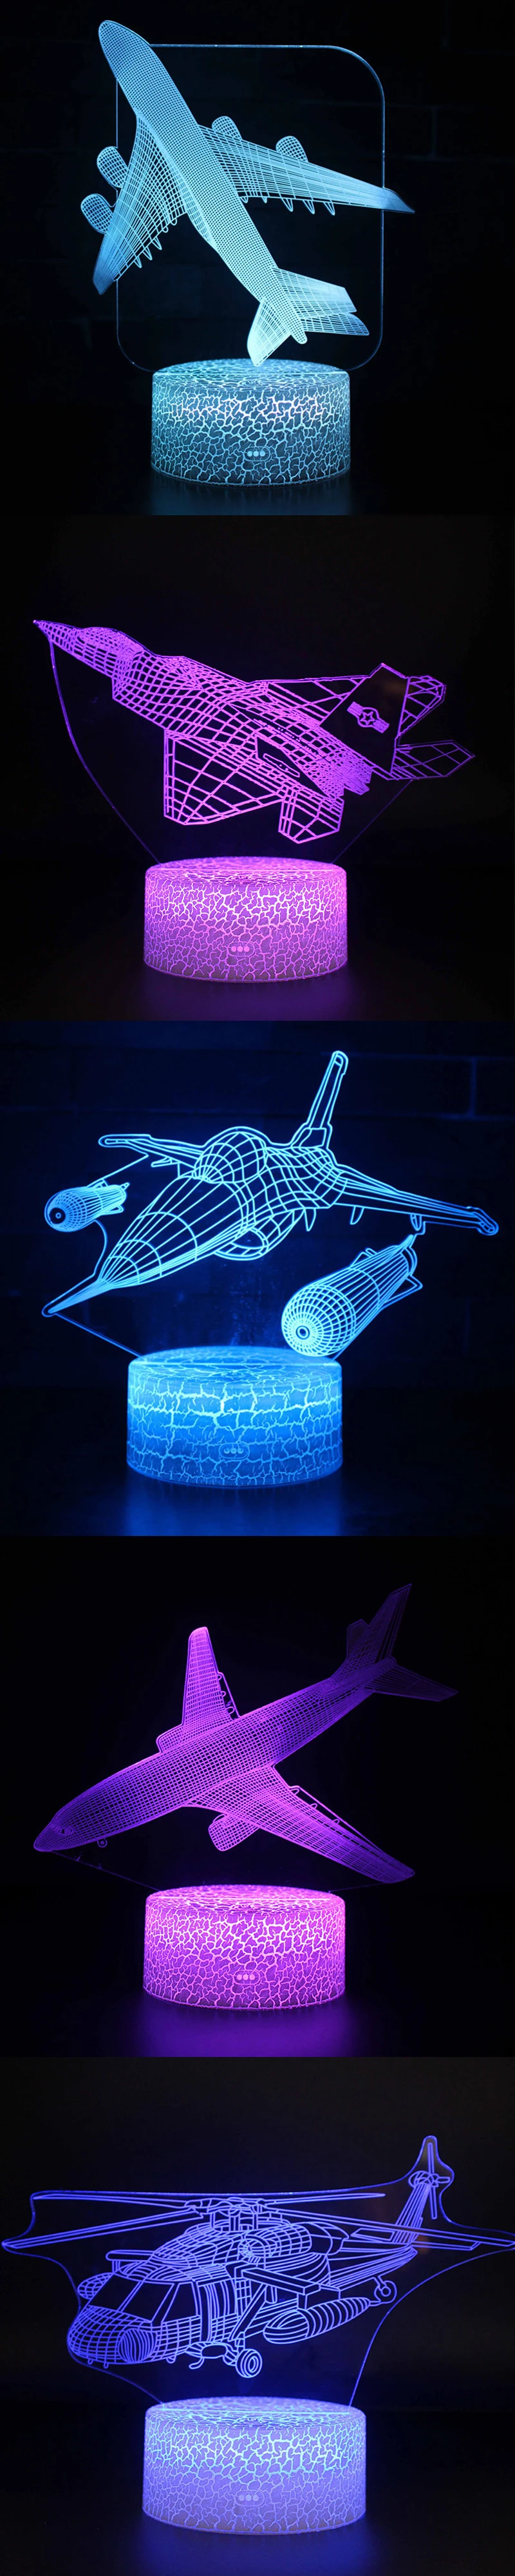 Пульт дистанционного управления Воздушный самолет 3D светильник светодиодный Настольный светильник Иллюзия Ночной светильник 7 цветов меняющая настроение лампа AAA питание от батареи USB лампа